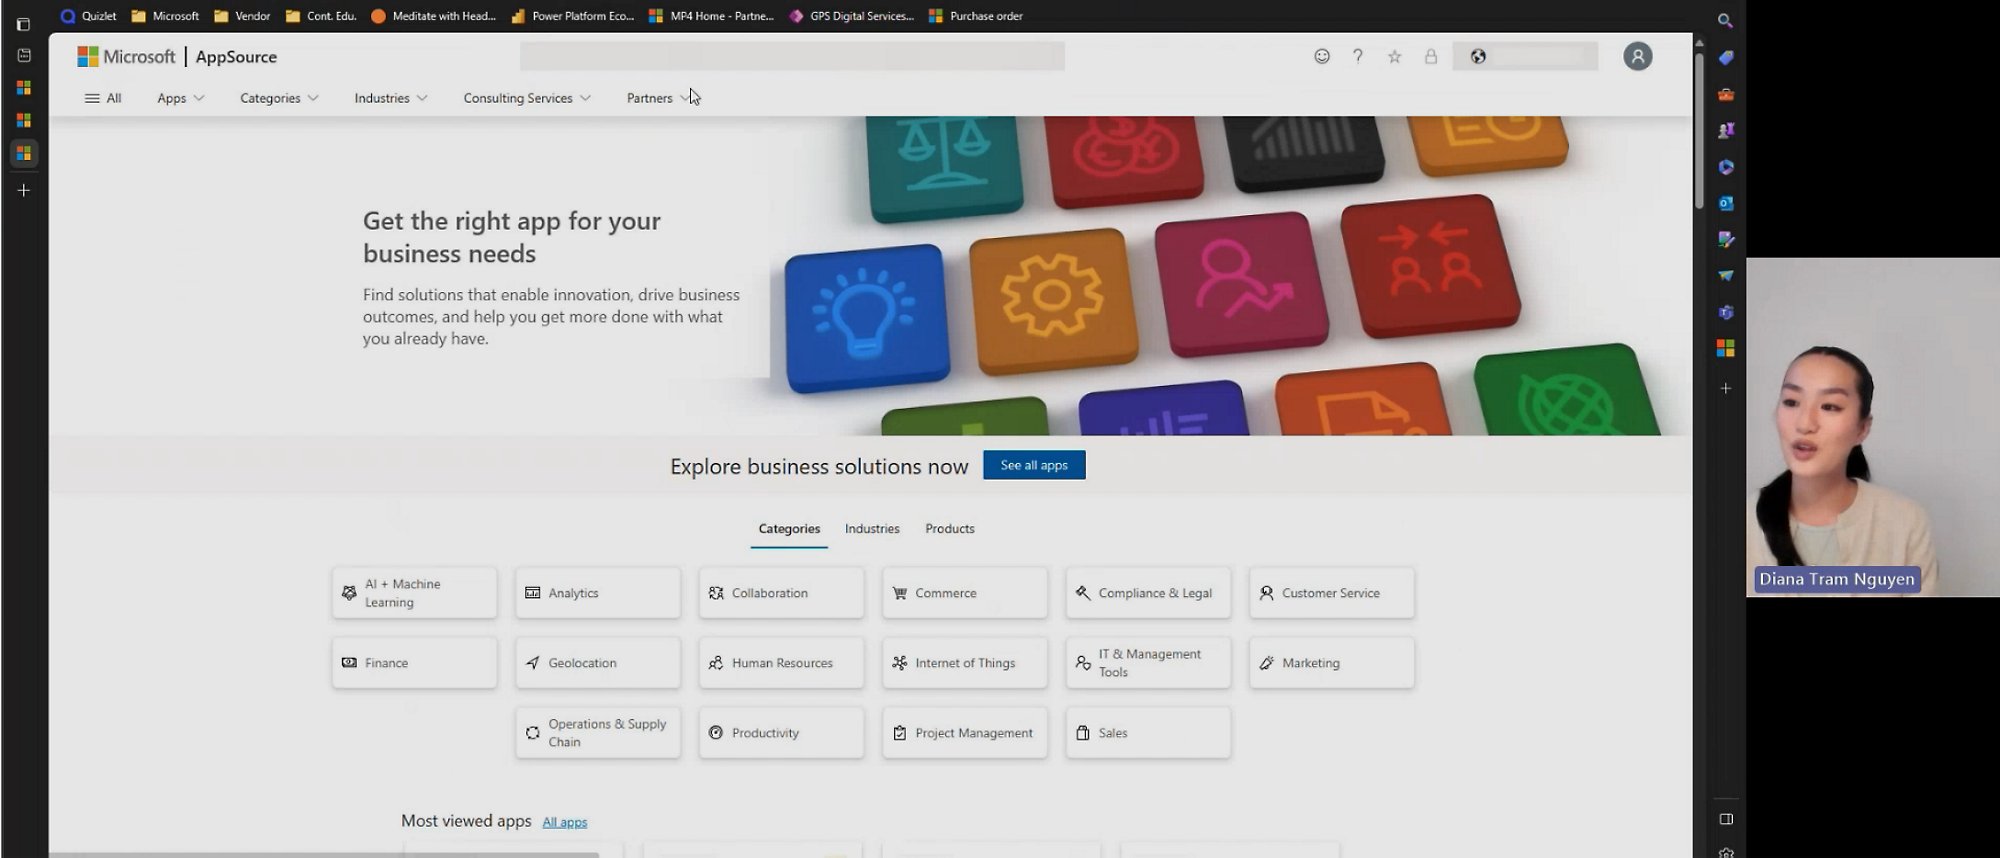 Снимок экрана видео, на котором показана страница Microsoft AppSource, связанная с обзором решений для бизнеса